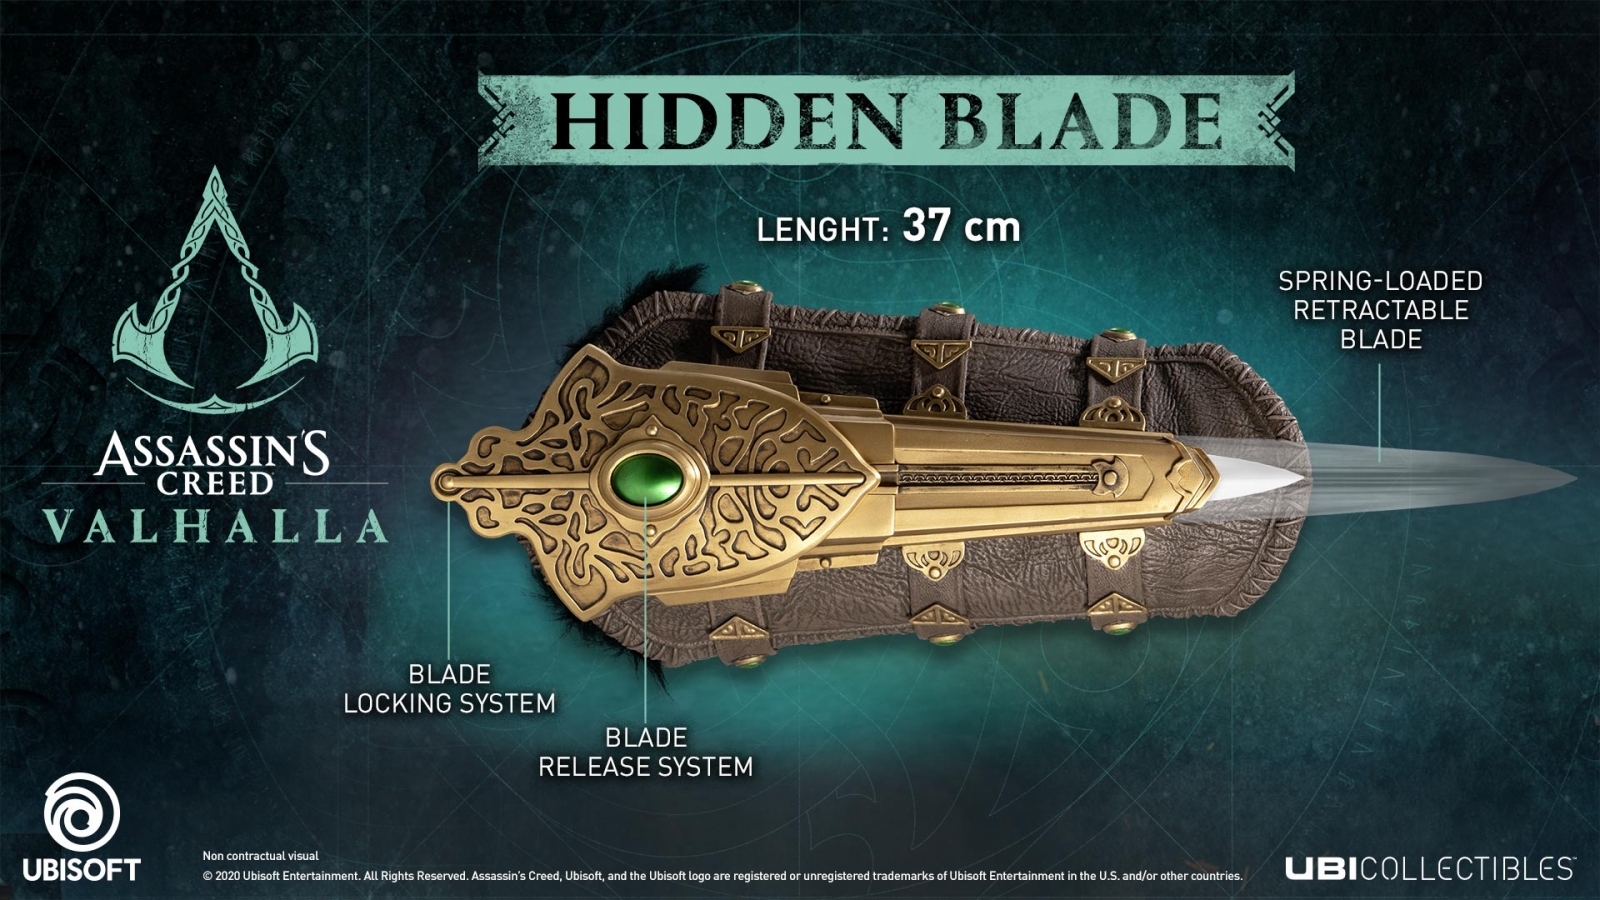 Assassin's Creed Valhalla: Eivor's Hidden Blade figurine